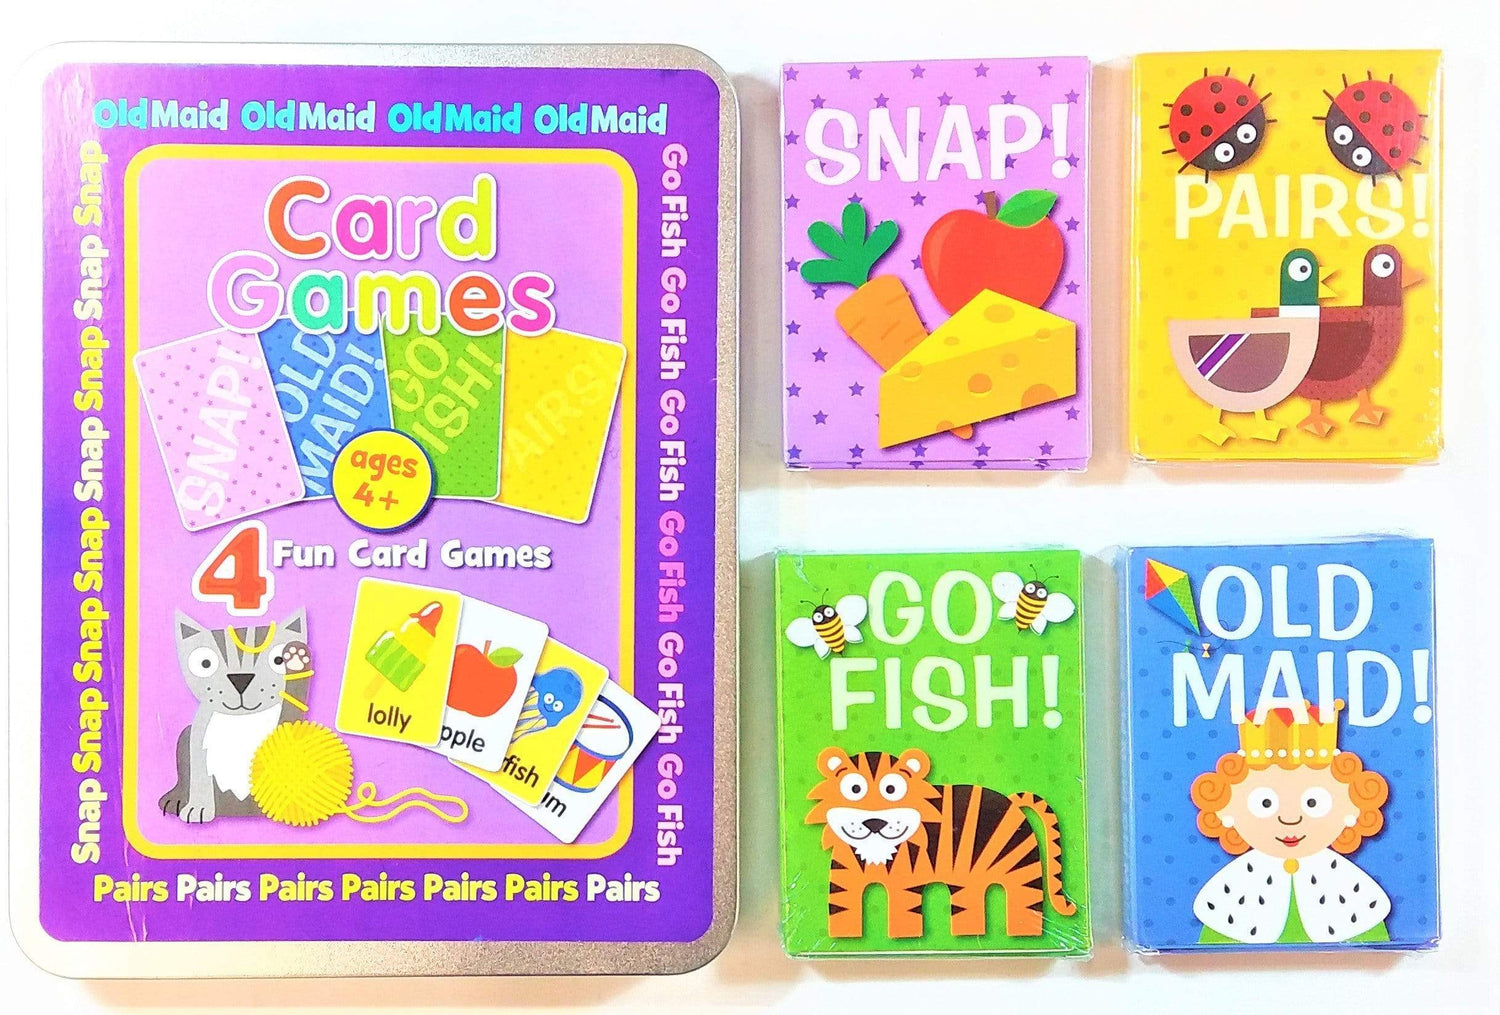 Card Games - 4 Fun Card Games